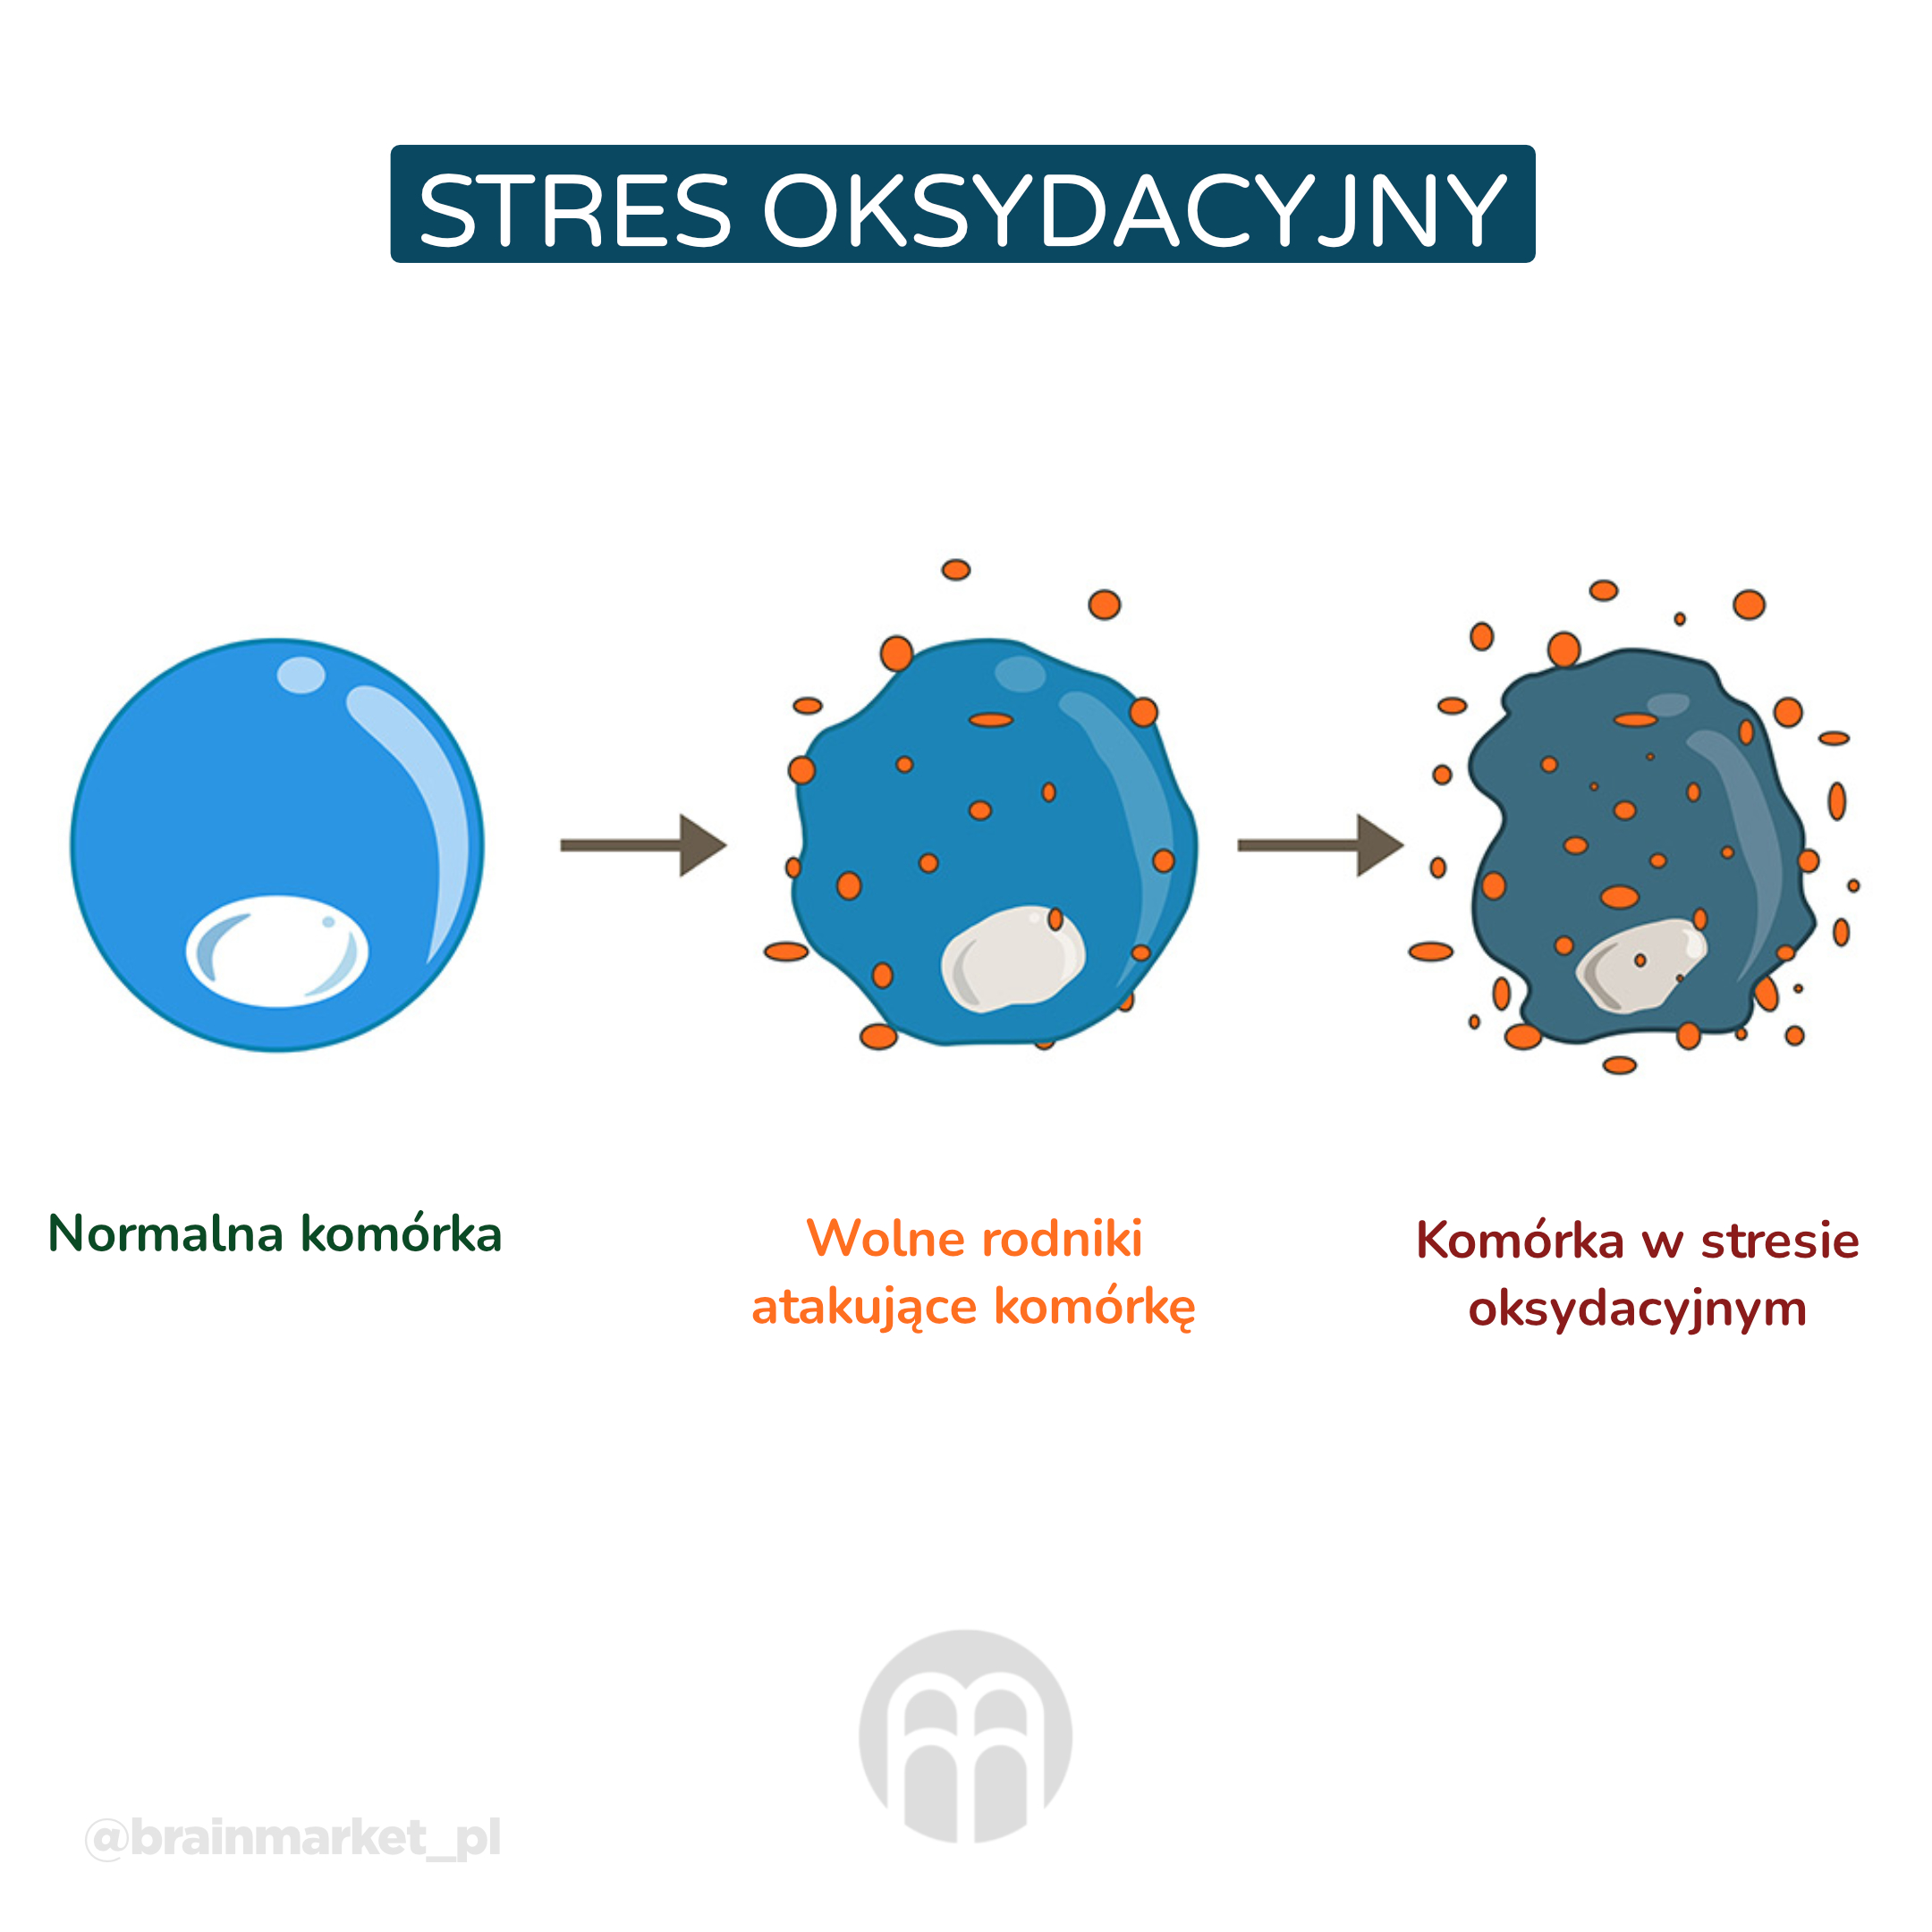 Oxidační stres_infografika_pl